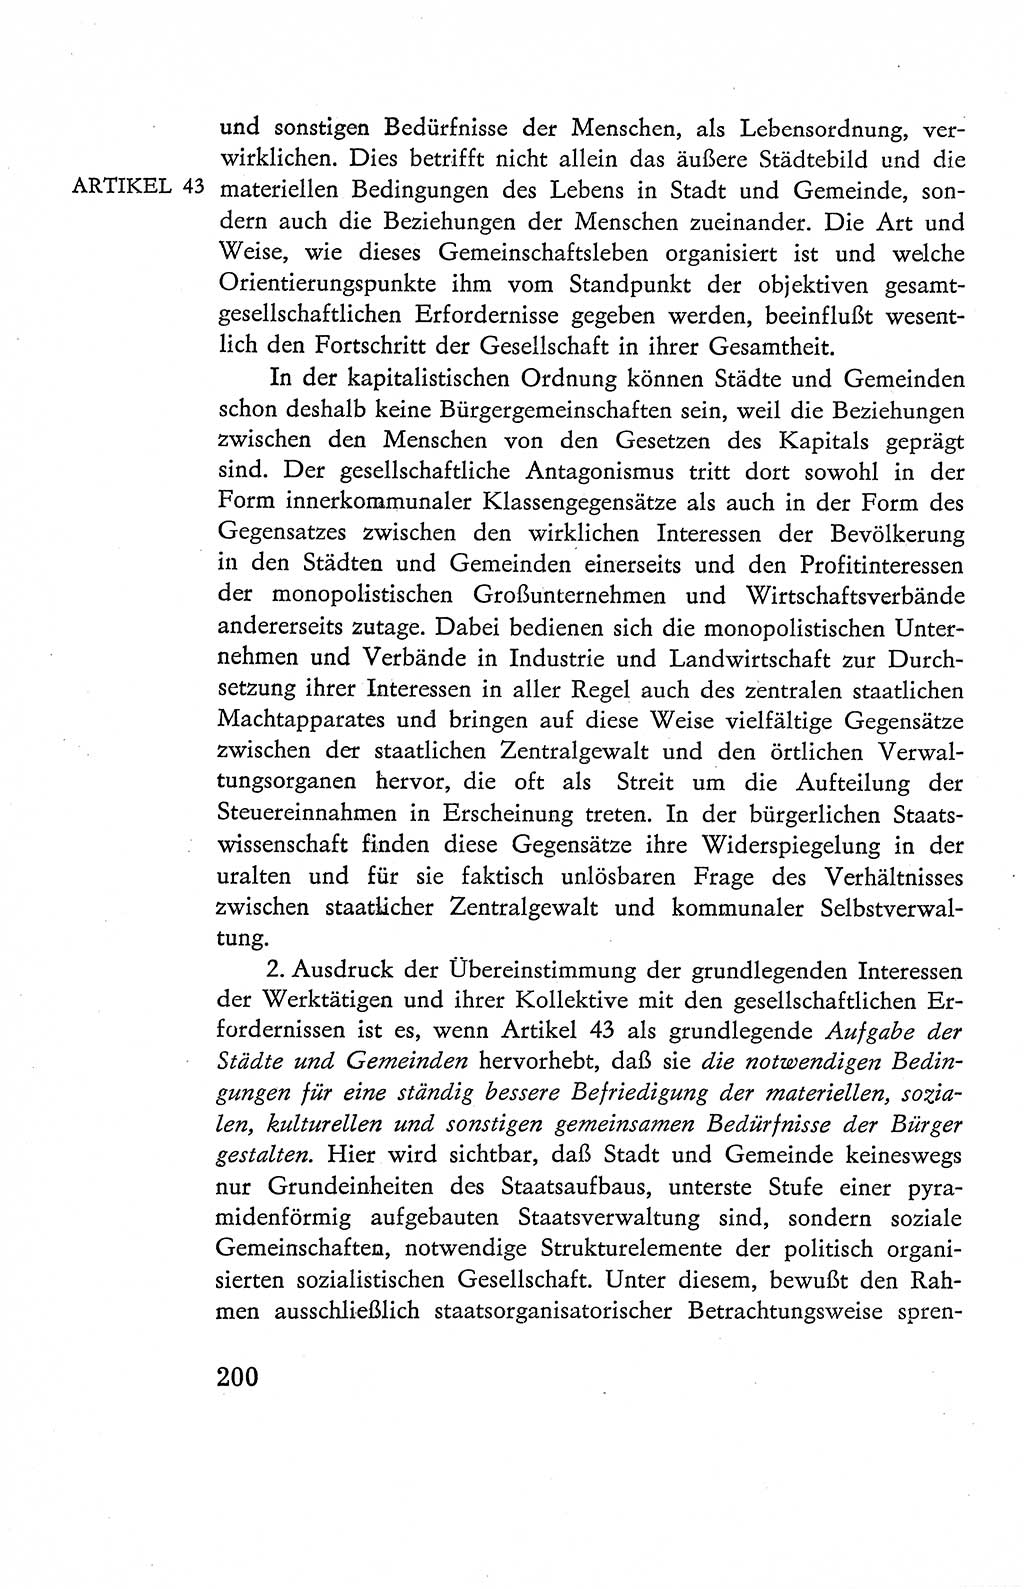 Verfassung der Deutschen Demokratischen Republik (DDR), Dokumente, Kommentar 1969, Band 2, Seite 200 (Verf. DDR Dok. Komm. 1969, Bd. 2, S. 200)